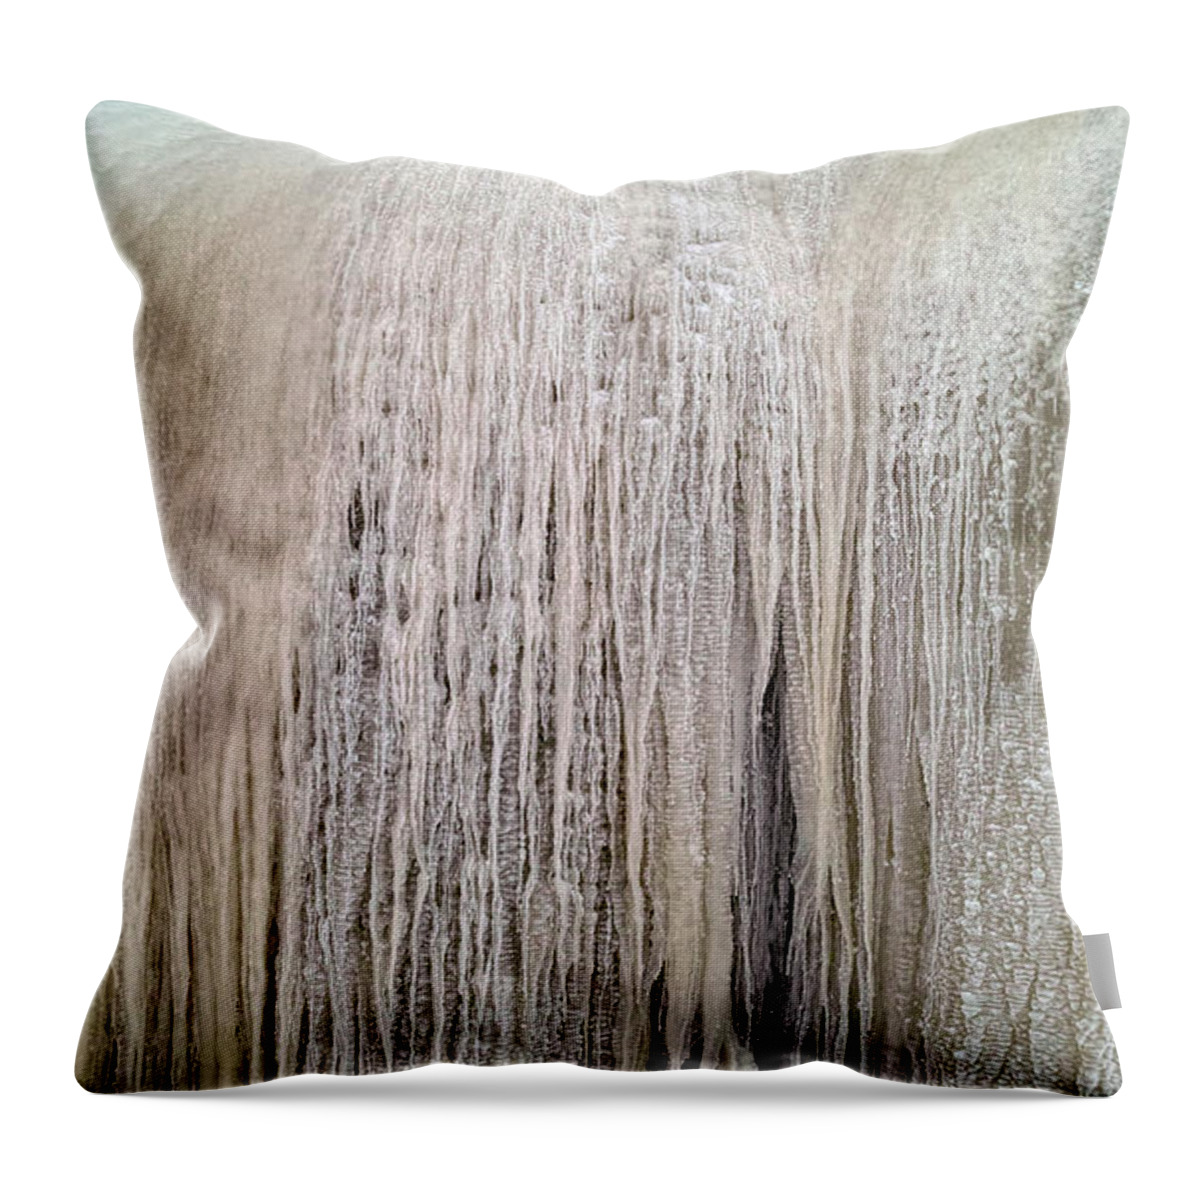 Ice Throw Pillow featuring the photograph Filigree Work of Ice by Pekka Sammallahti